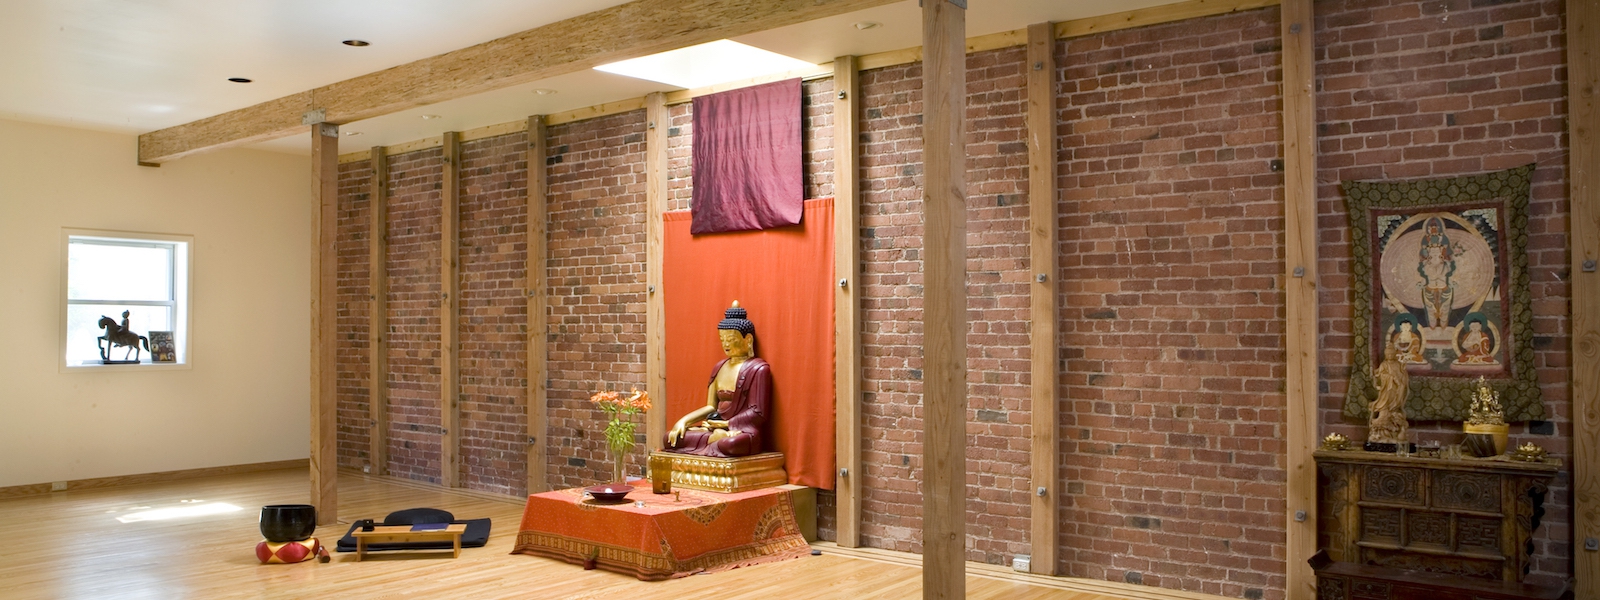 Shrine Room